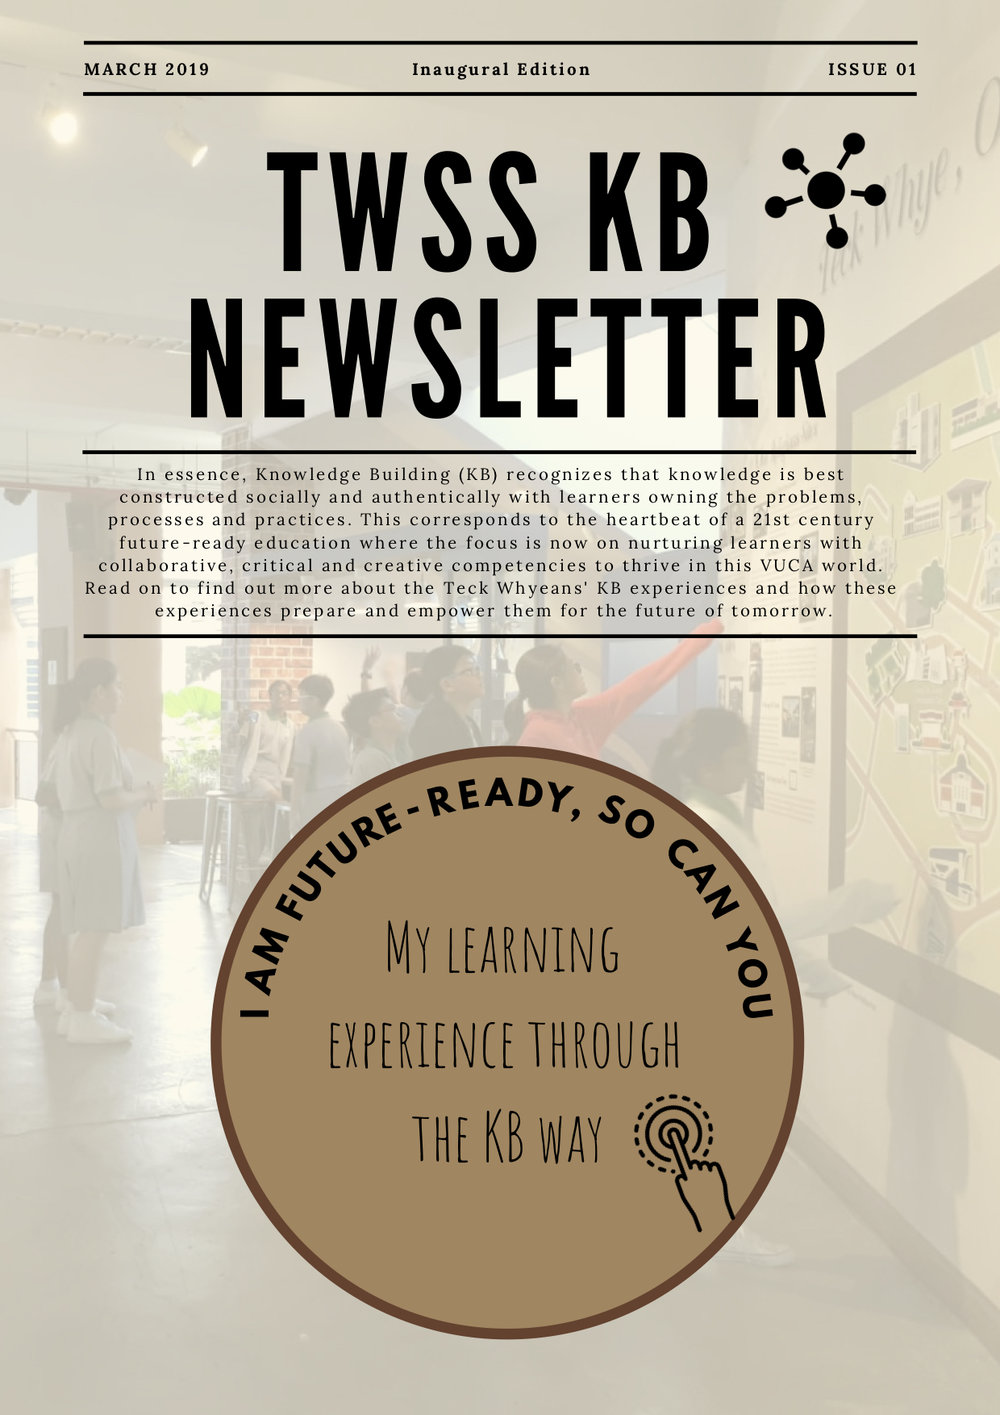 TWSS KB Newsletter Mar'19 (v2.2).jpg